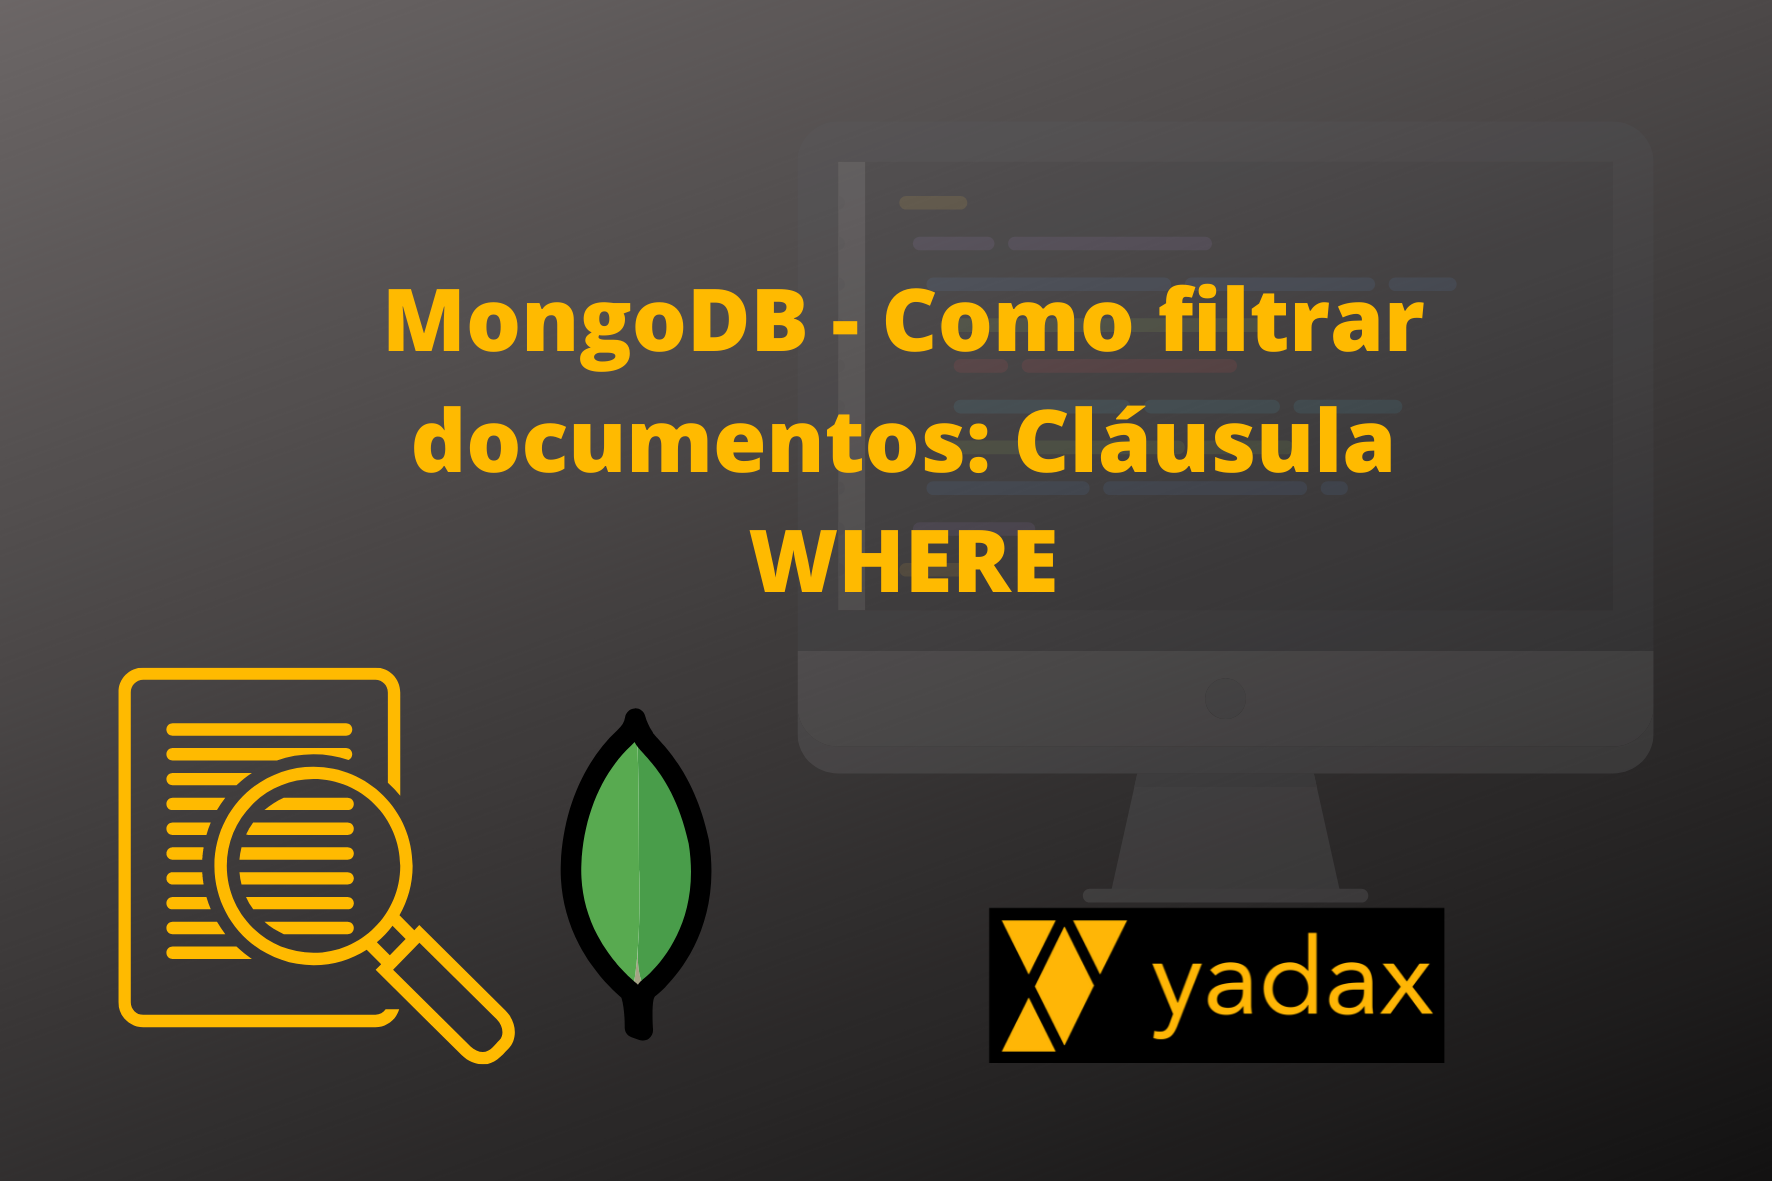 MongoDB - Como filtrar documentos Cláusula WHERE